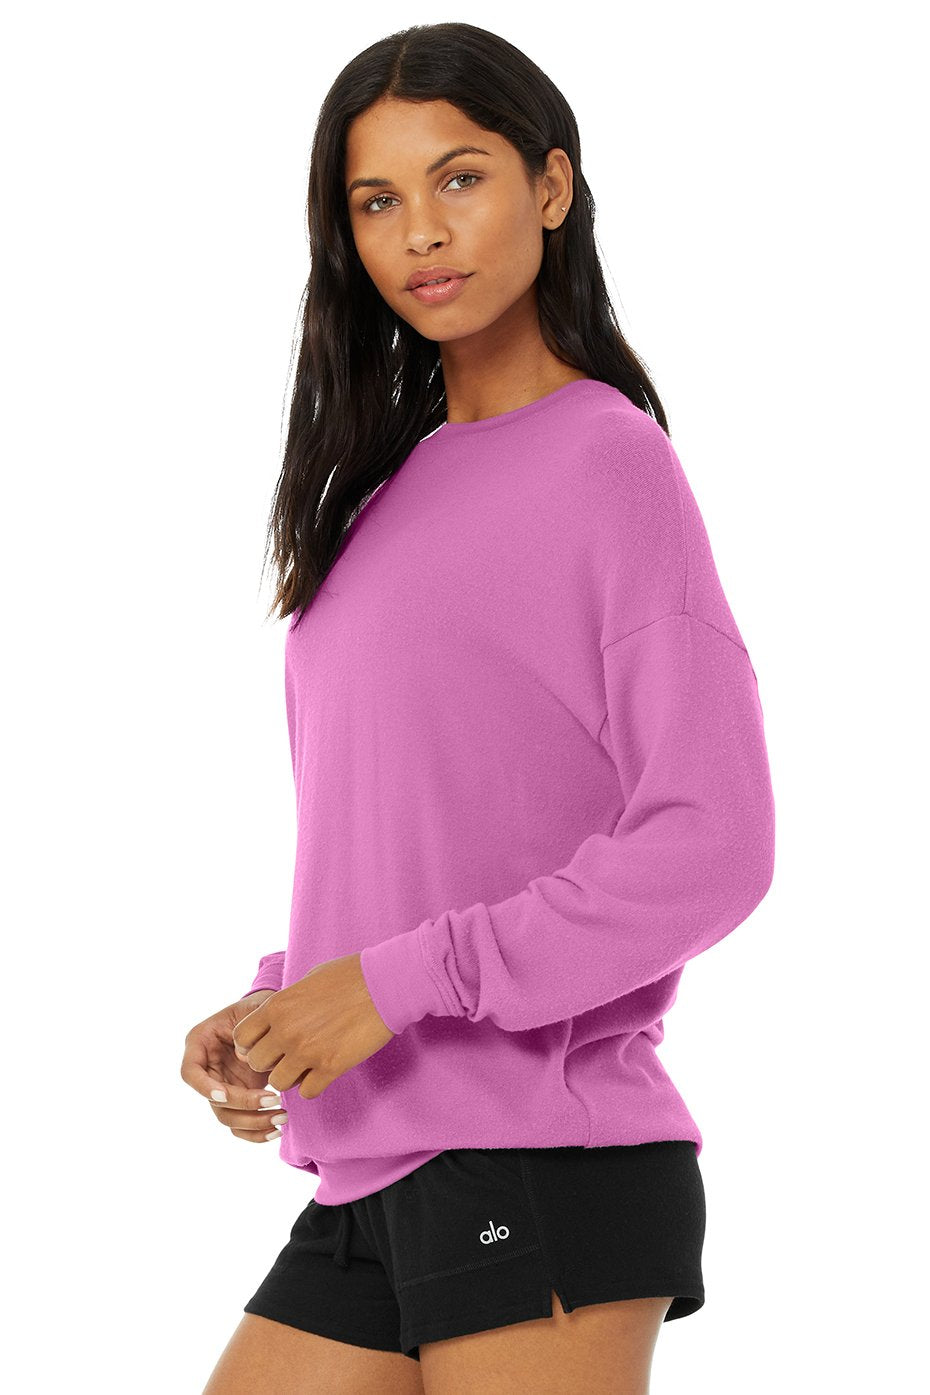 Alo Yoga Sweatshirts for Women